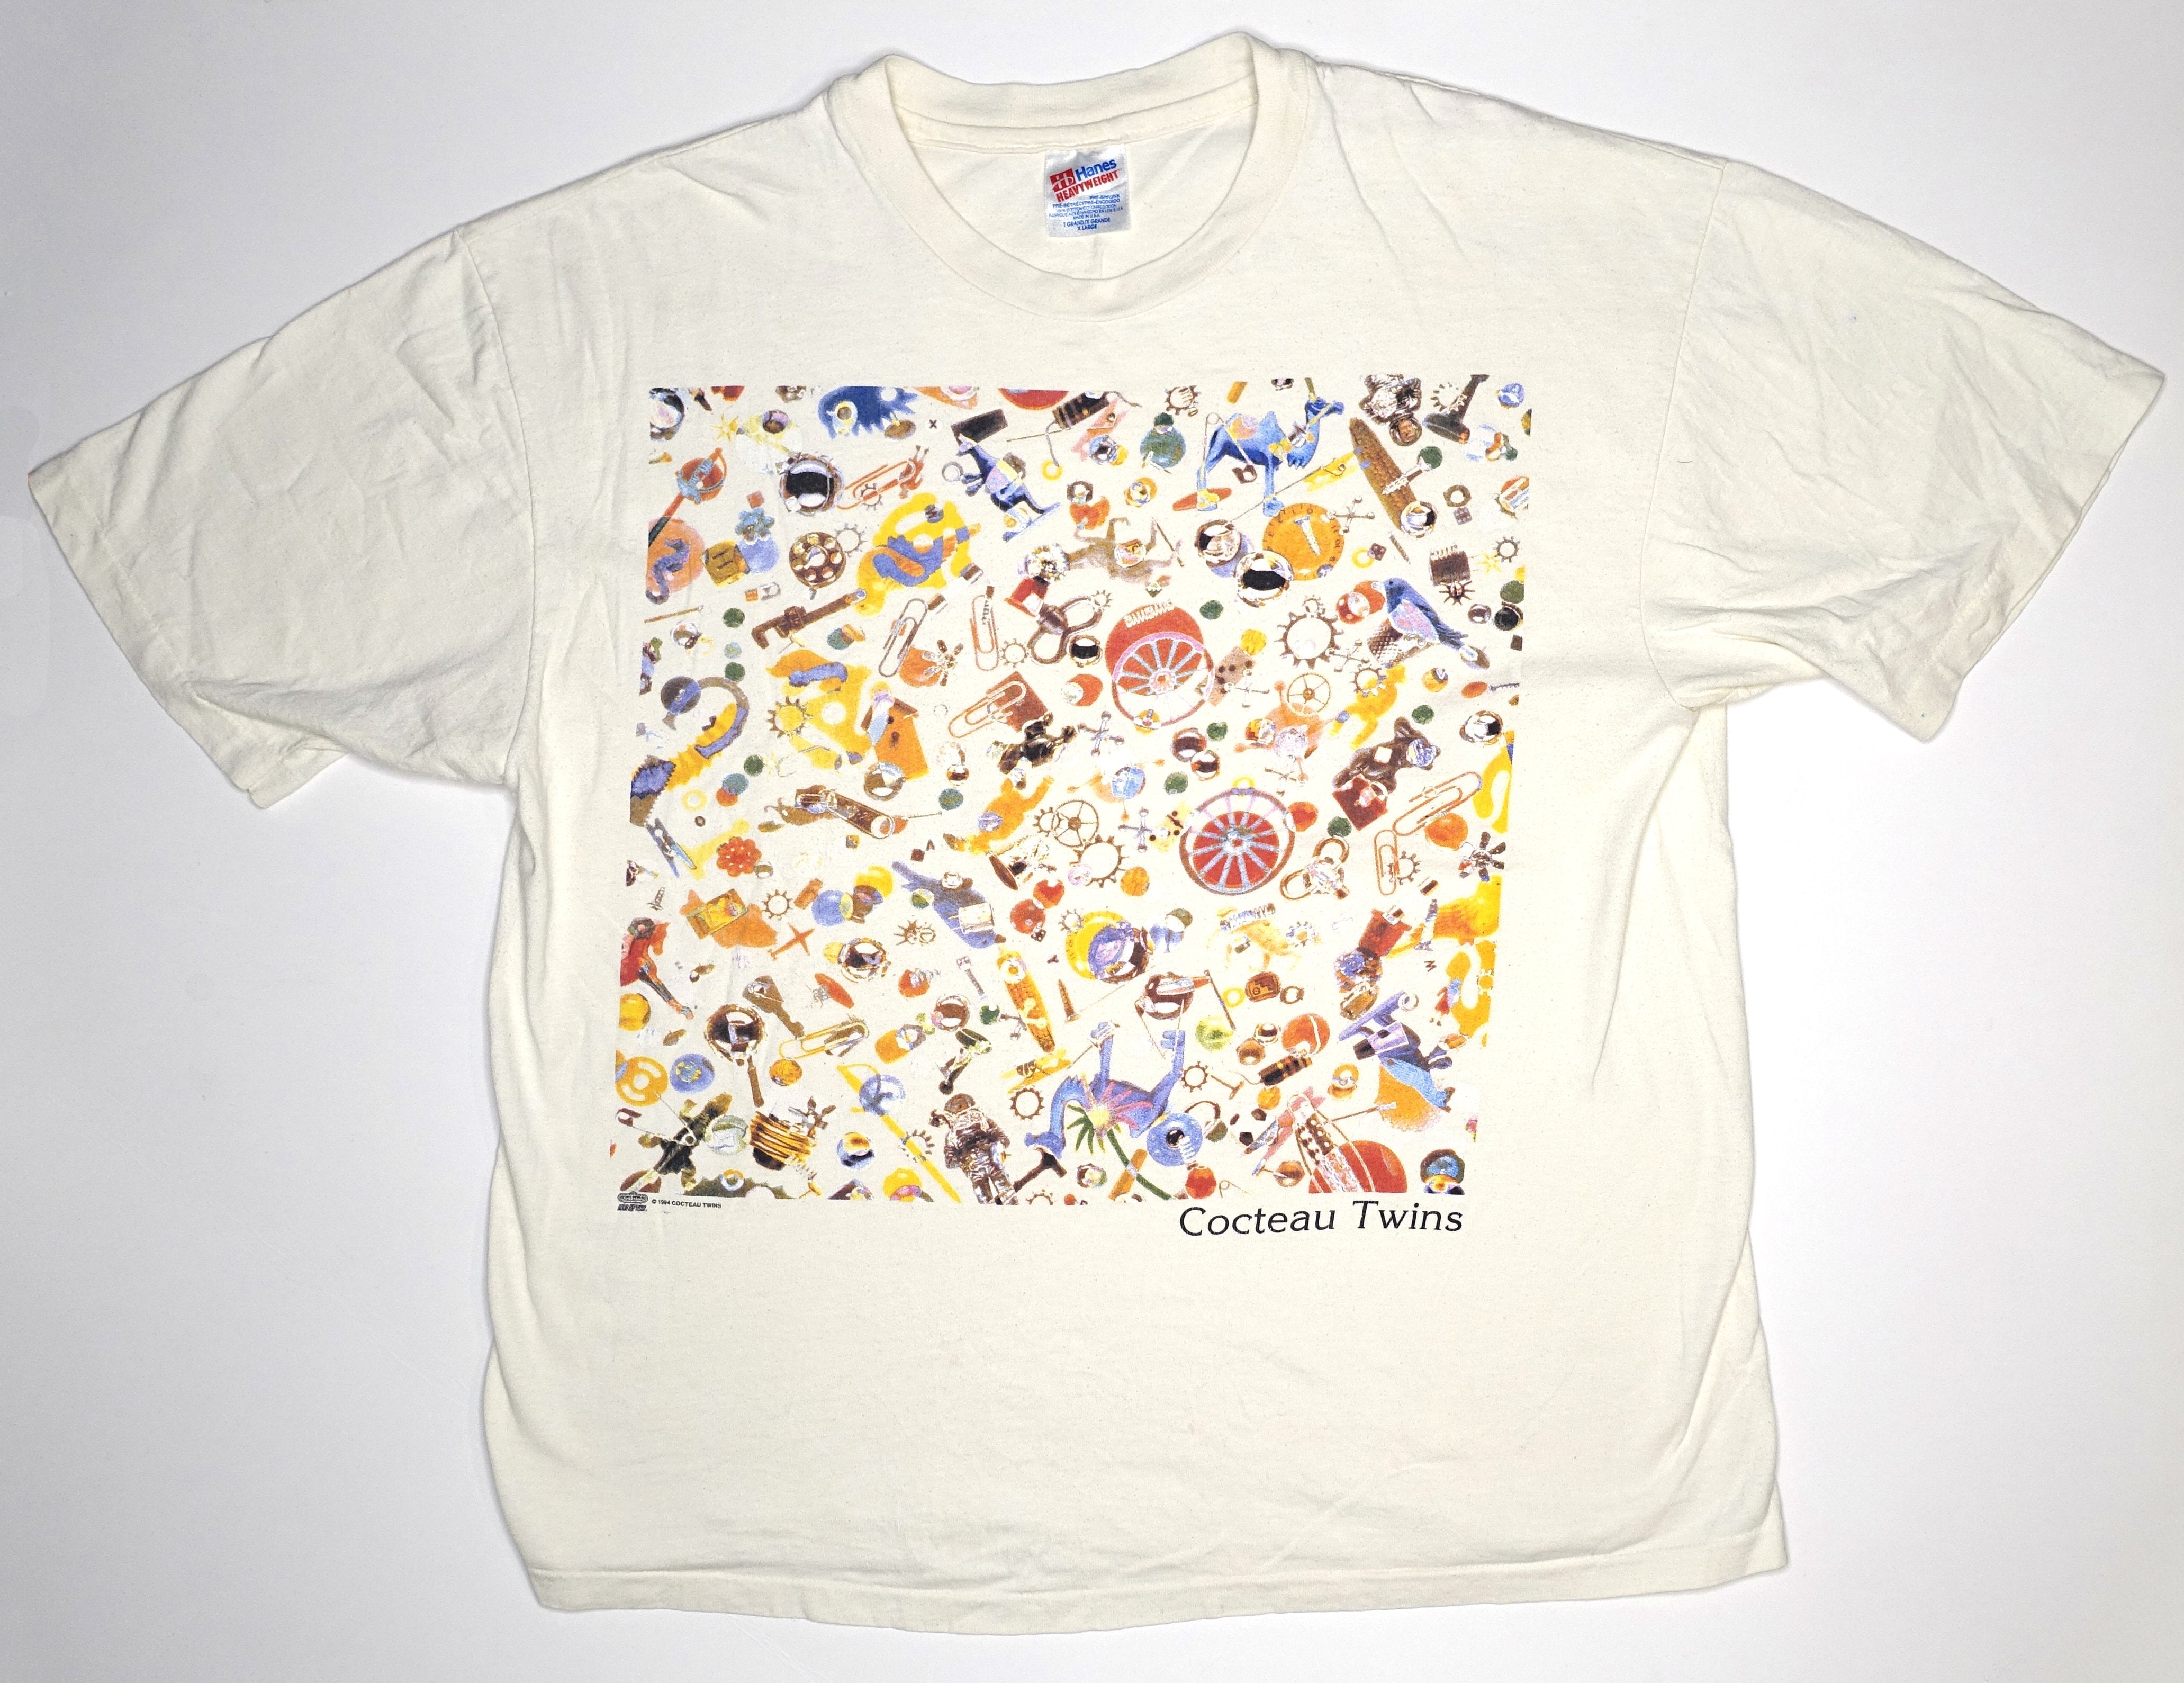 Cocteau Twins - Four Calendar Café 1993 Tour Shirt Size XL